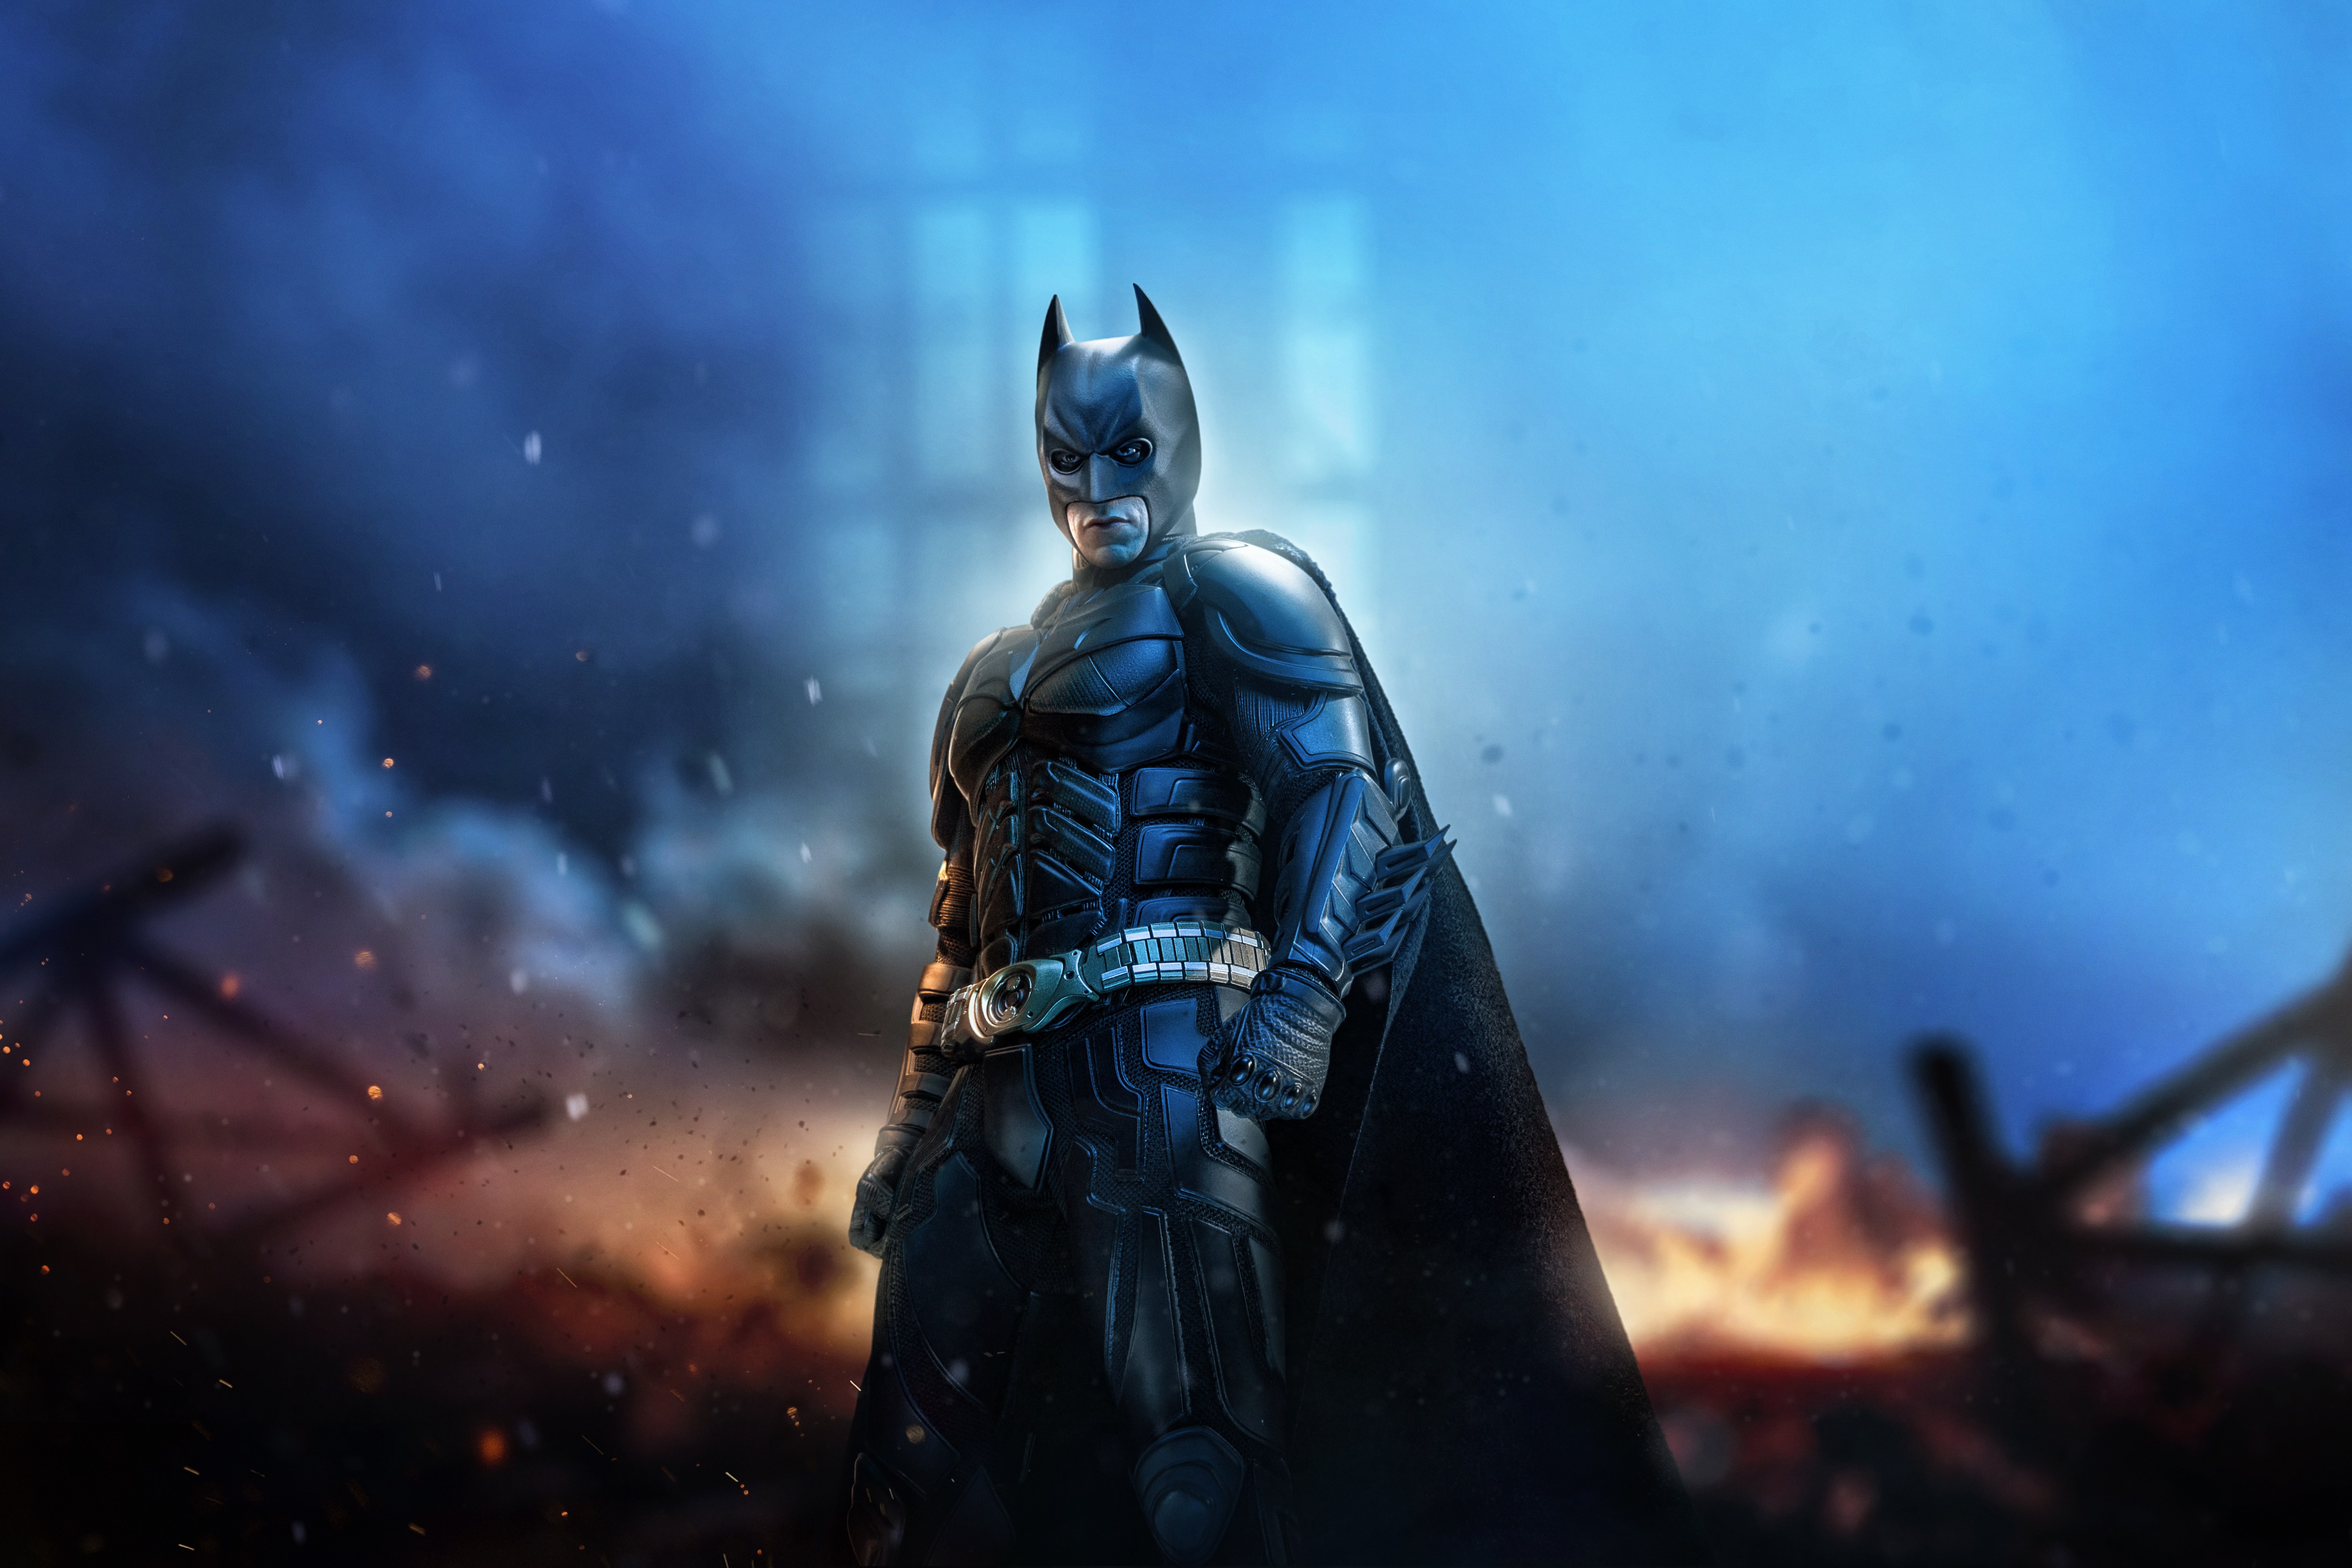 R batman. Бэтмен темный рыцарь. Тёмный рыцарь арт Бэтмен. Бэтмэн тёмный рыцарь арт.